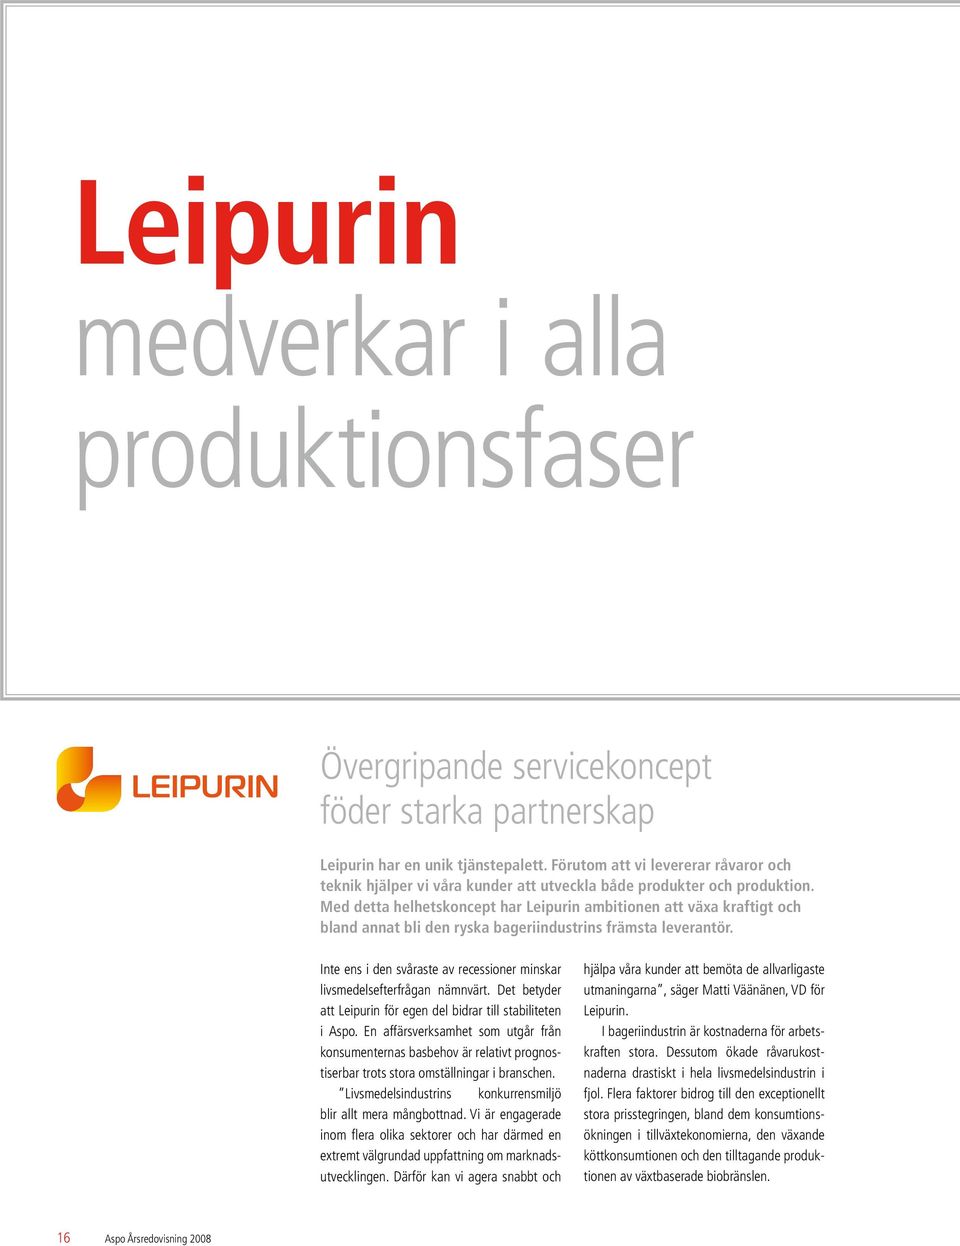 Med detta helhetskoncept har Leipurin ambitionen att växa kraftigt och bland annat bli den ryska bageriindustrins främsta leverantör.